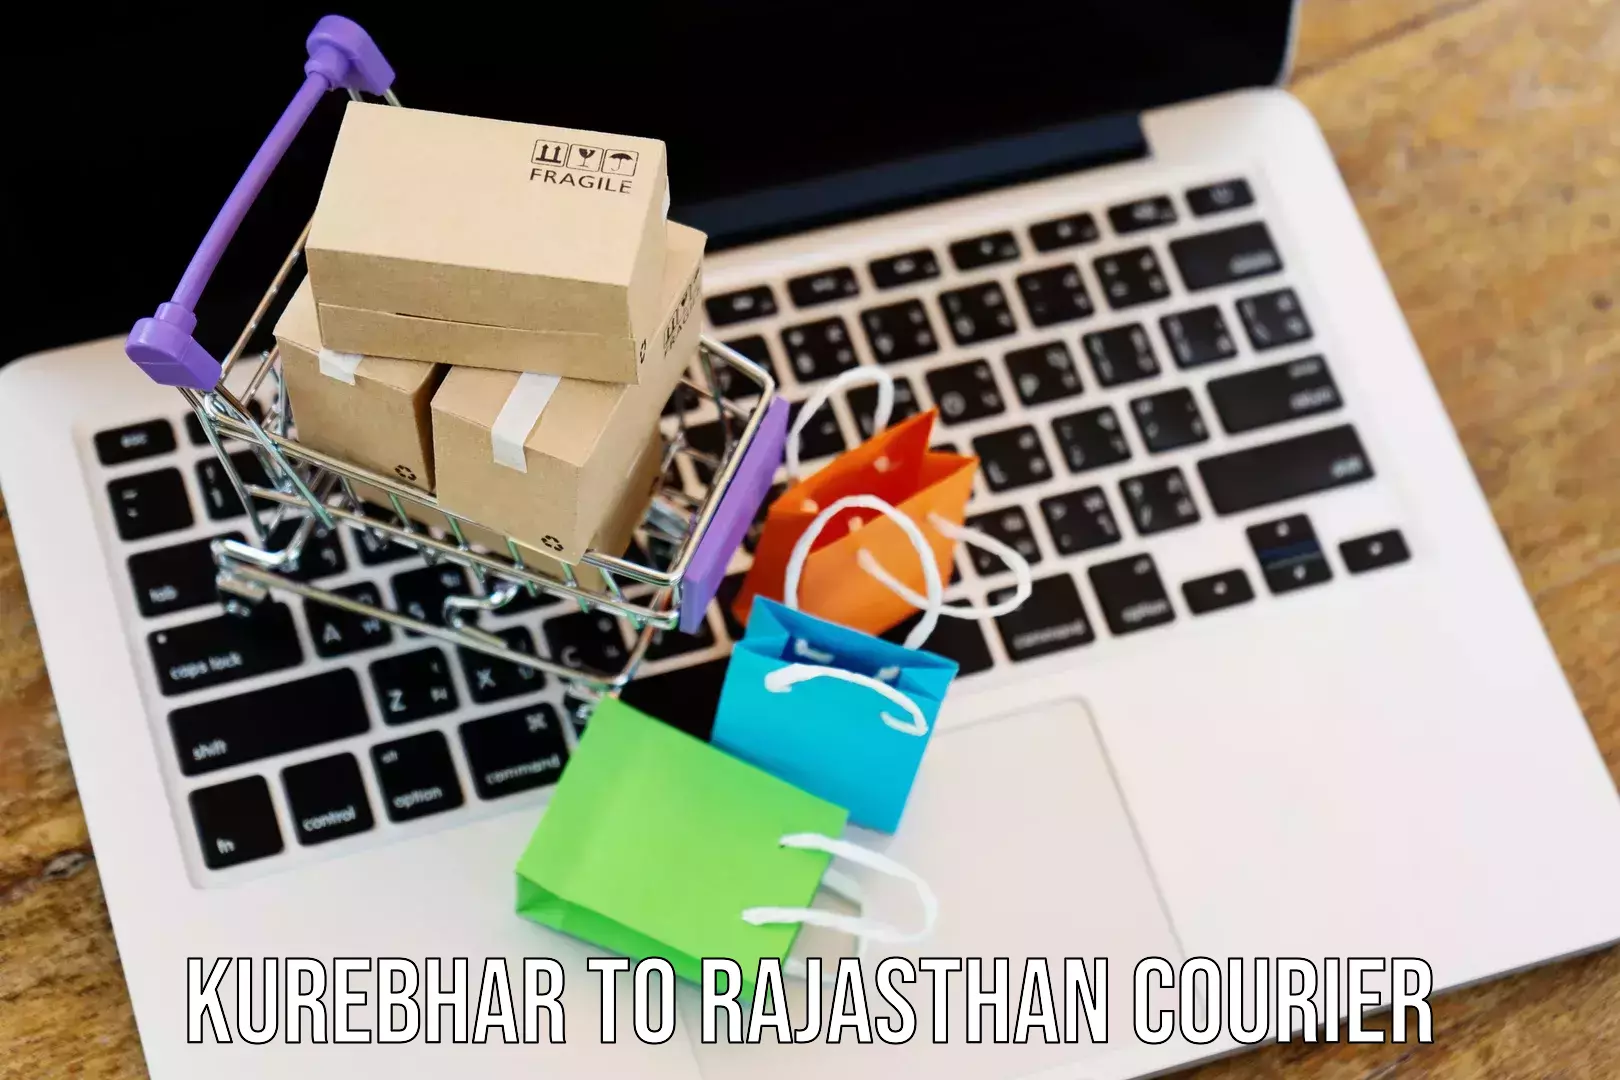 Enhanced tracking features Kurebhar to Rajasthan